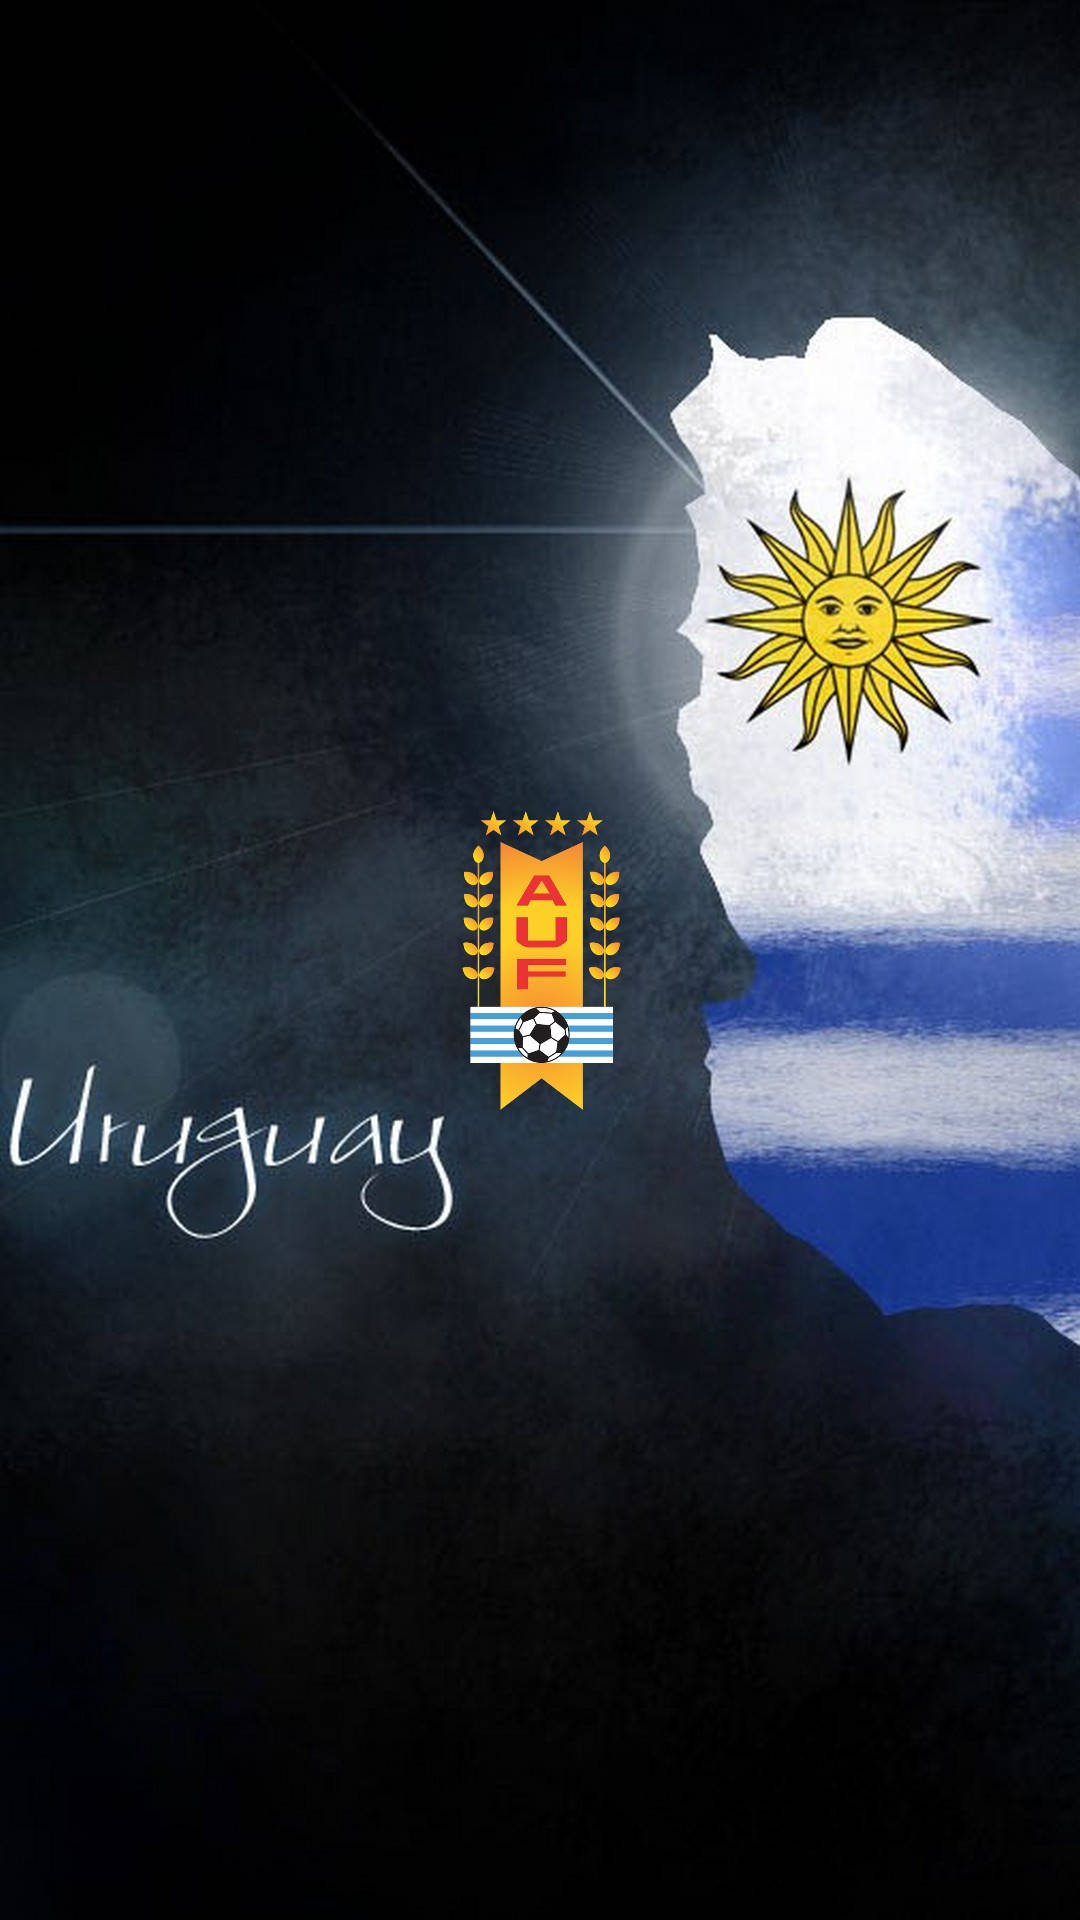 Download Uruguay Stylized Sun Logo Wallpaper